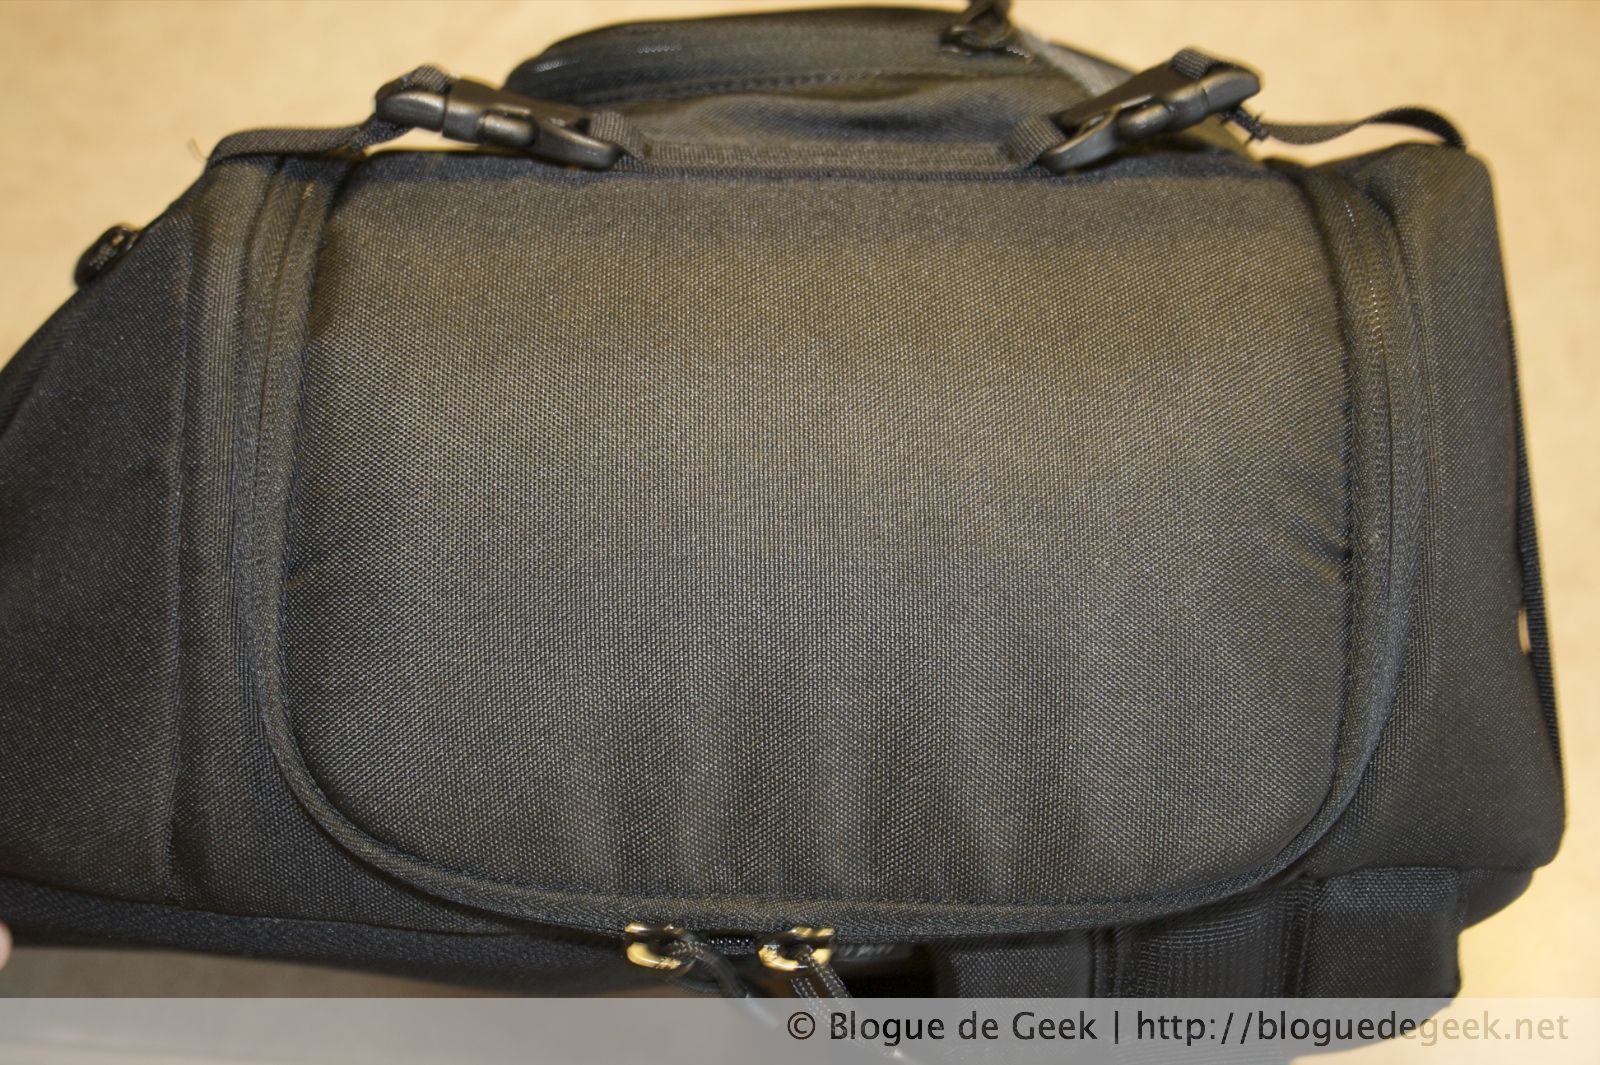 img 27643 - Lowepro Slingshot 300 AW, sac à dos pour photographe [Évaluation]